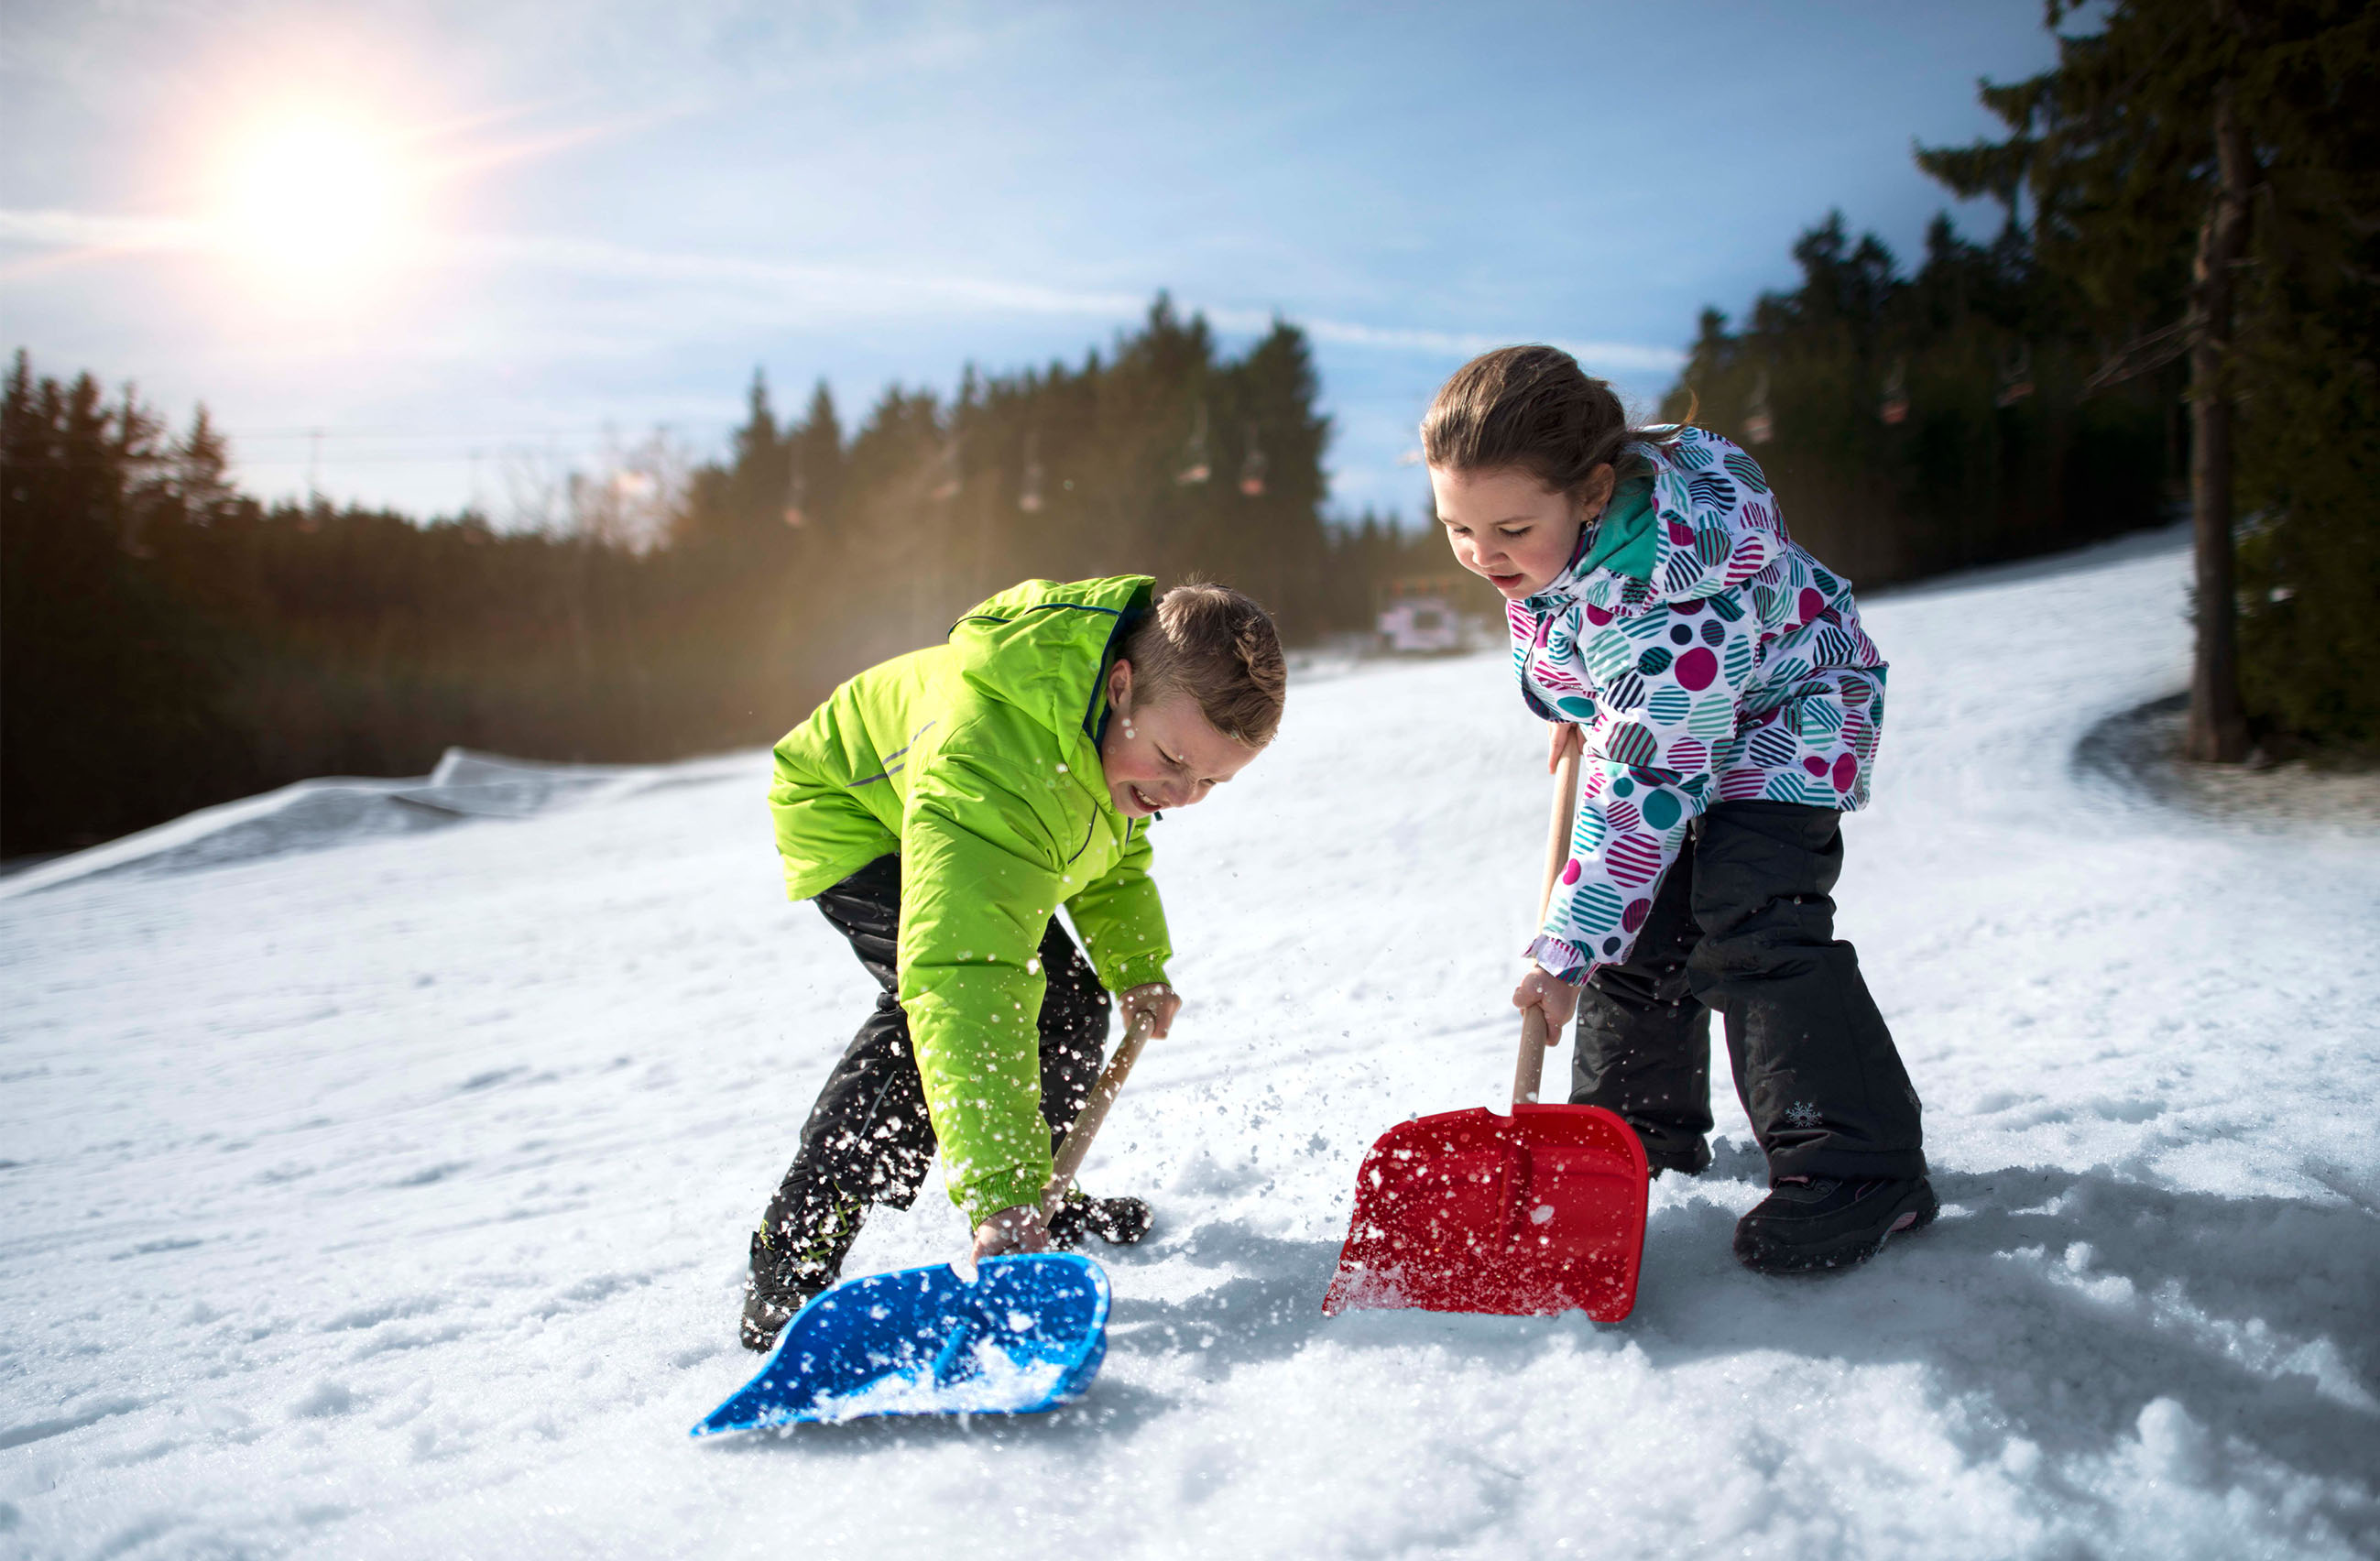 Mac Toys Dětská lopata na sníh, červená